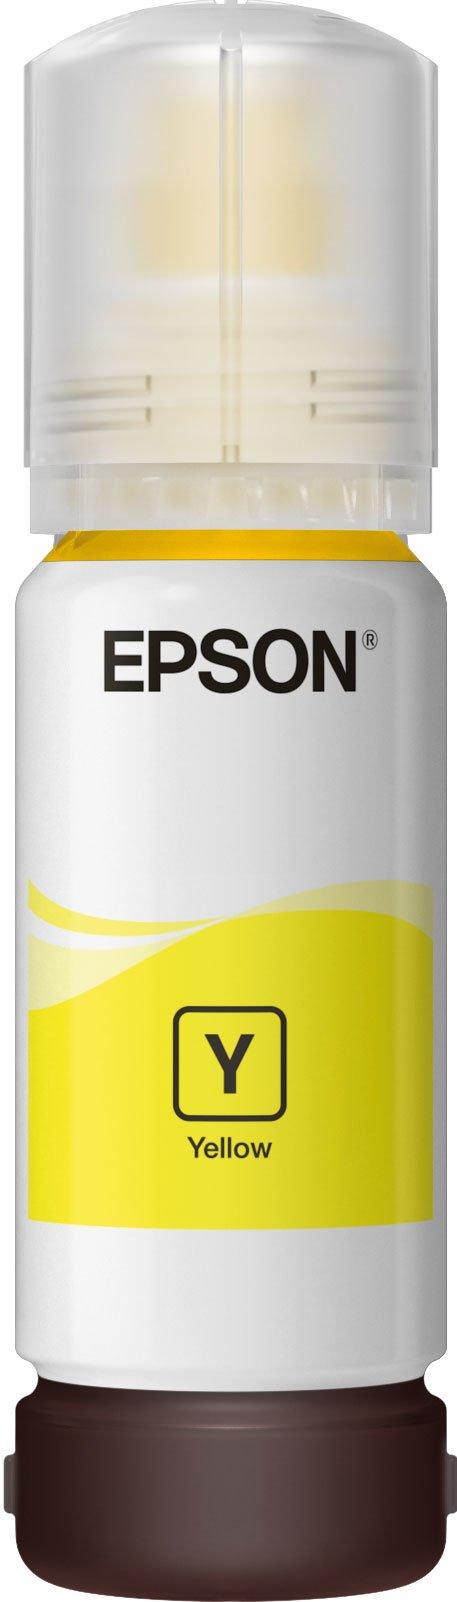 Epson 102 réservoir d'encre noire (d'origine) Epson